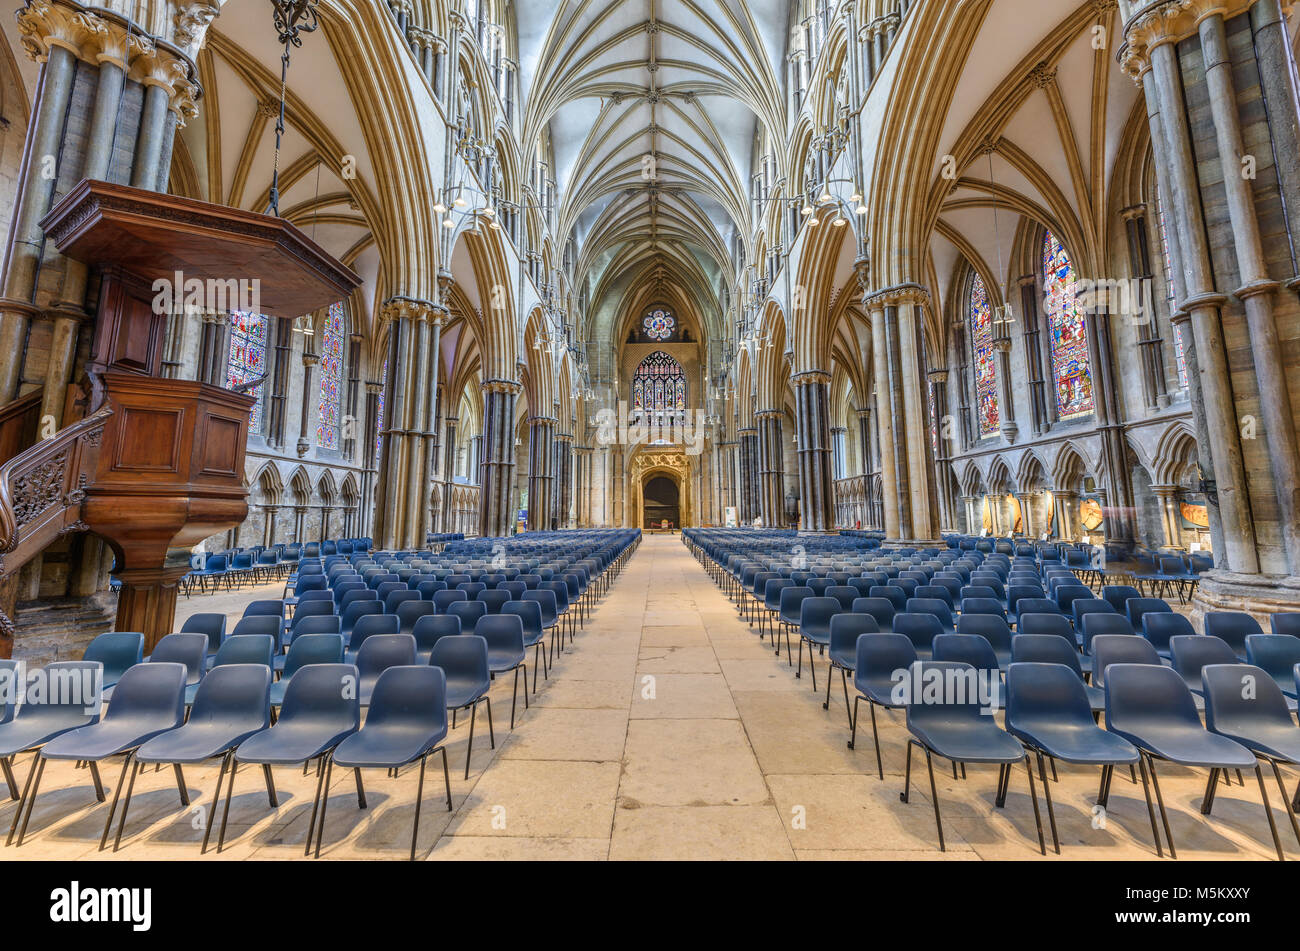 La navata guardando verso il west end della medioevale cristiana cattedrale costruita dai Normanni a Lincoln, Inghilterra. Foto Stock